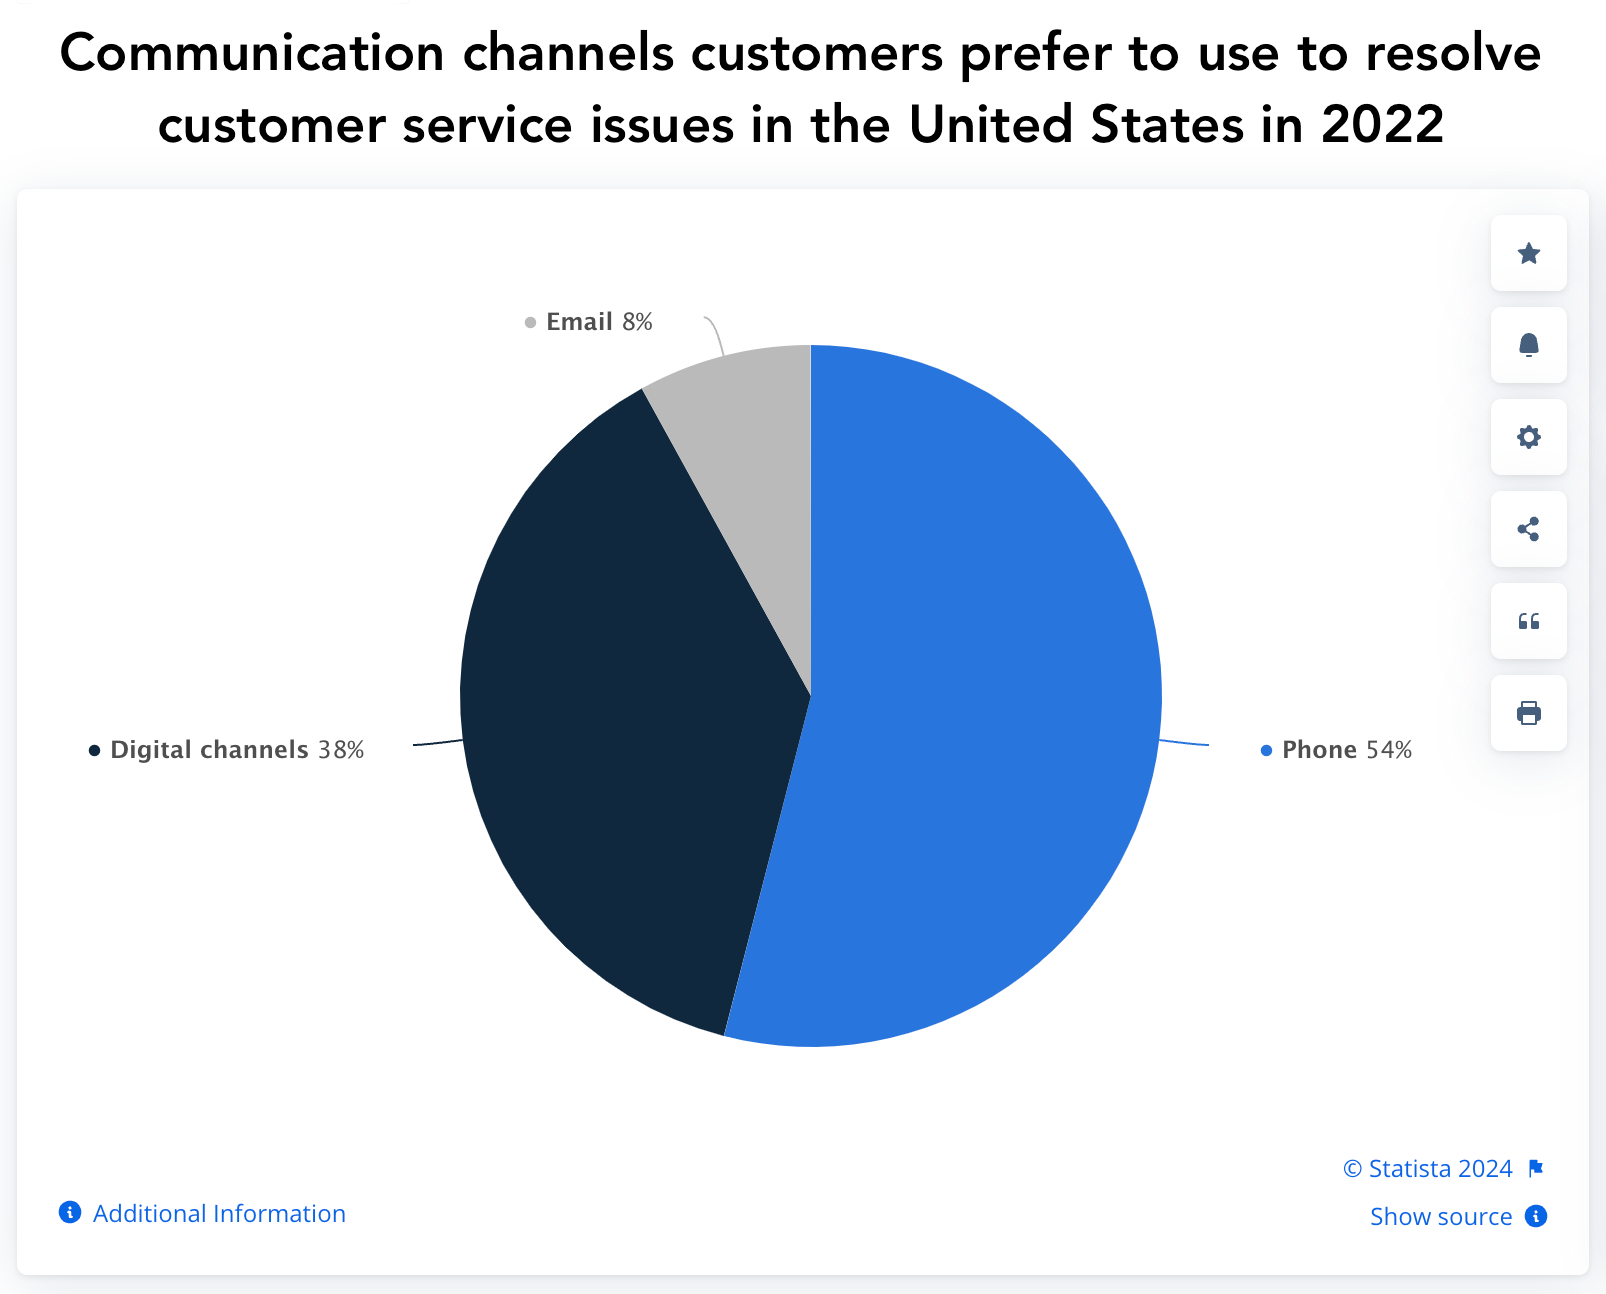 Müşterilerin 2022'de ABD'deki sorunları çözmek için kullanmayı tercih ettiği iletişim kanallarını (telefon, dijital kanallar, e-posta) gösteren Statista pasta grafiği